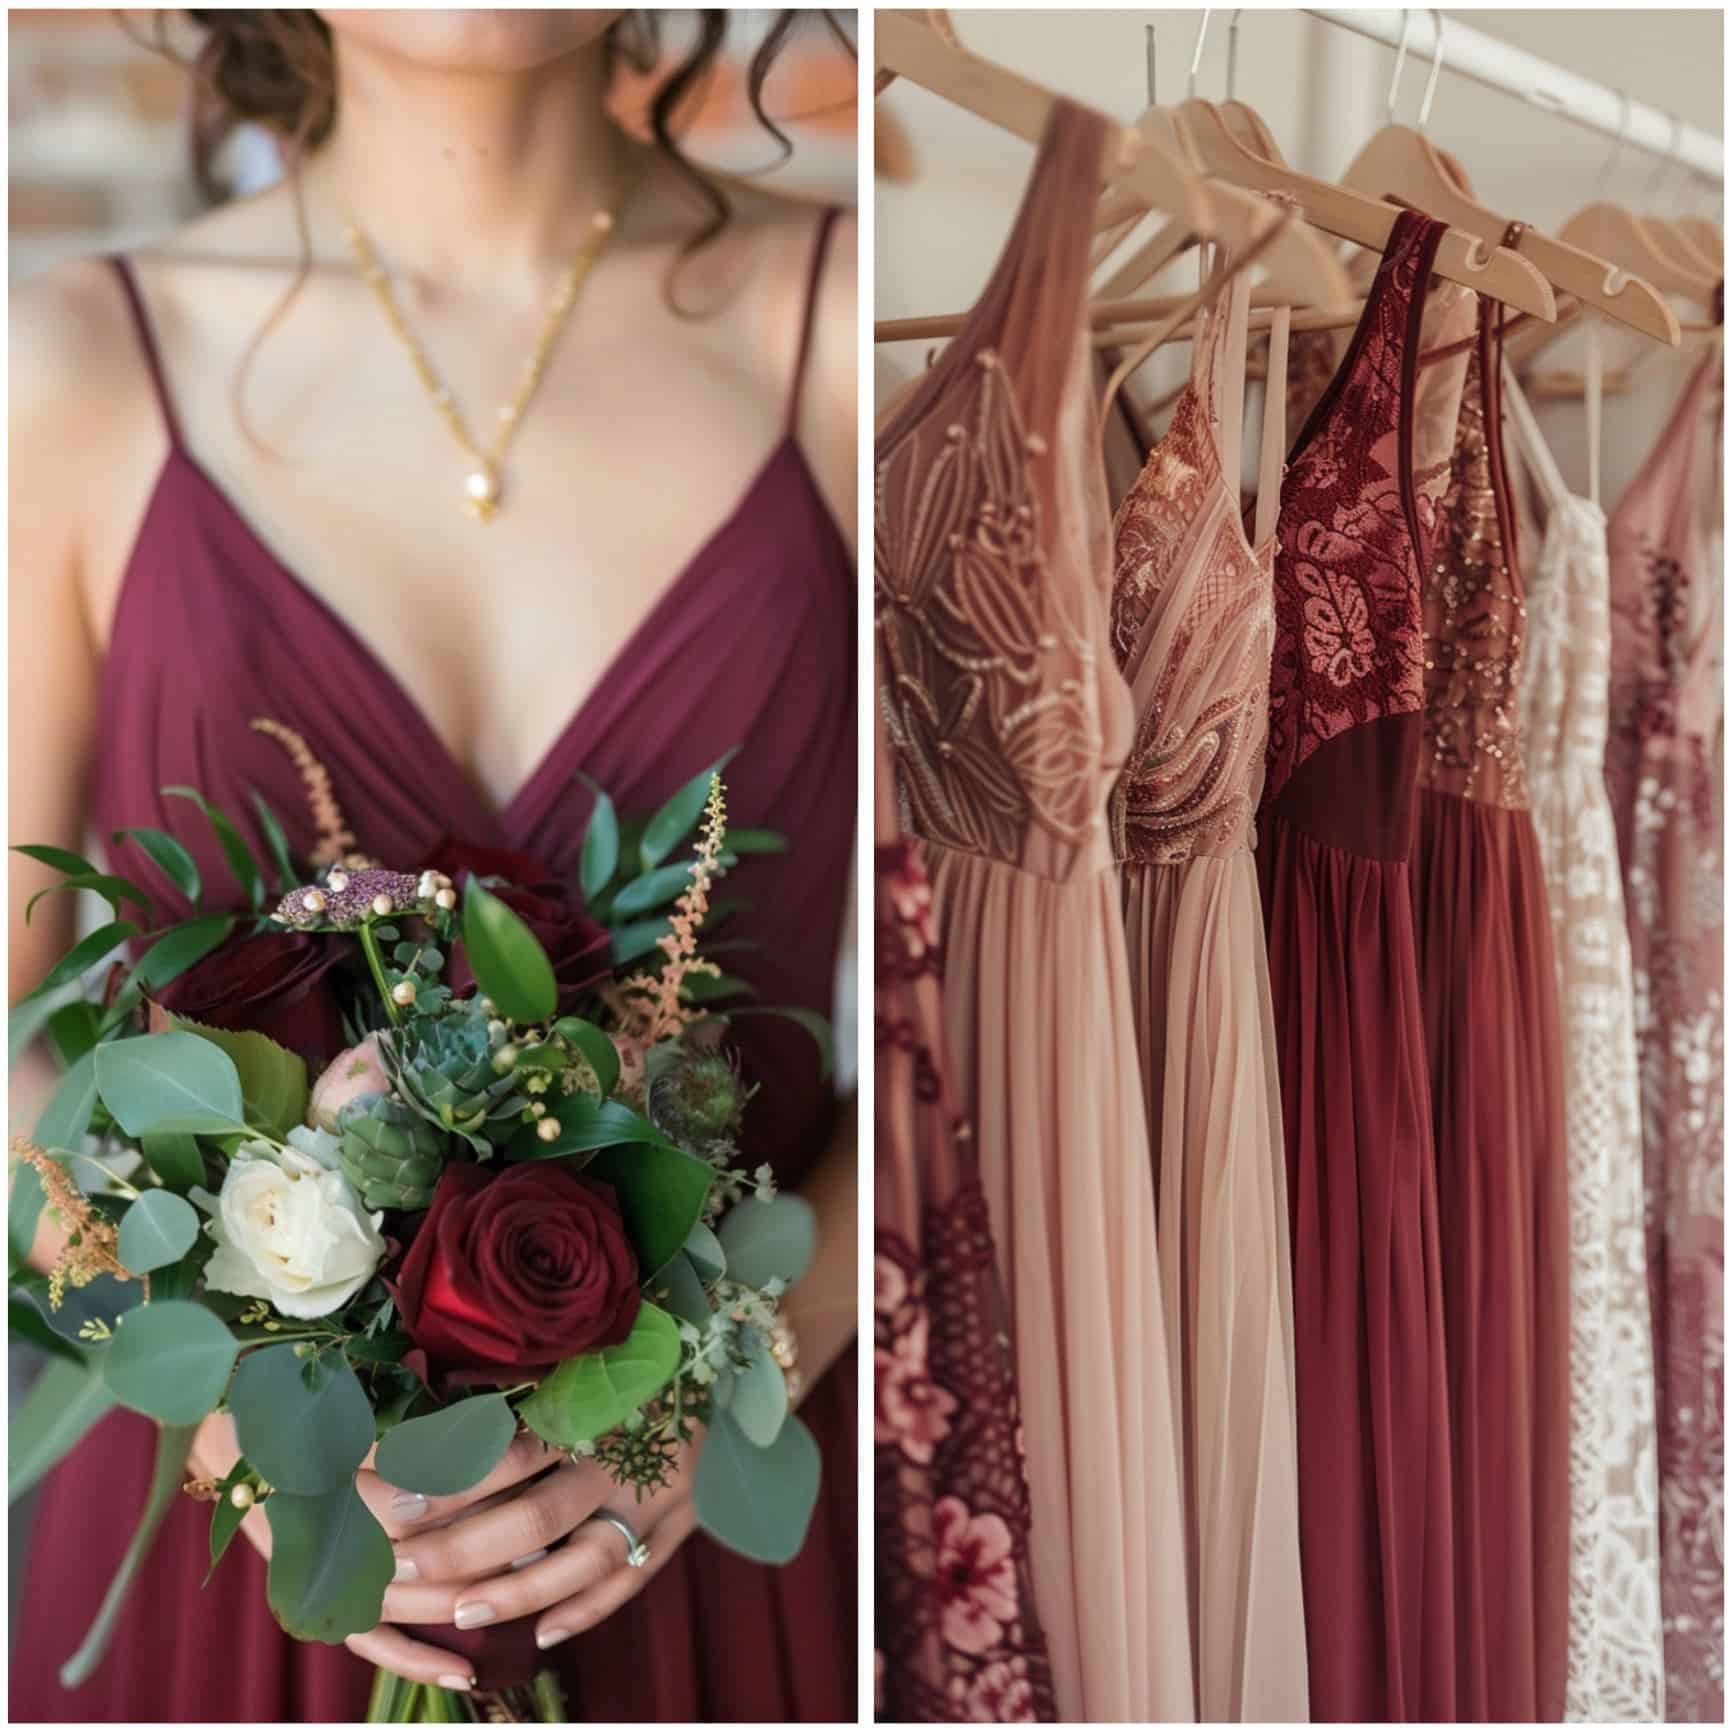 bridesmaids attire in burgundy